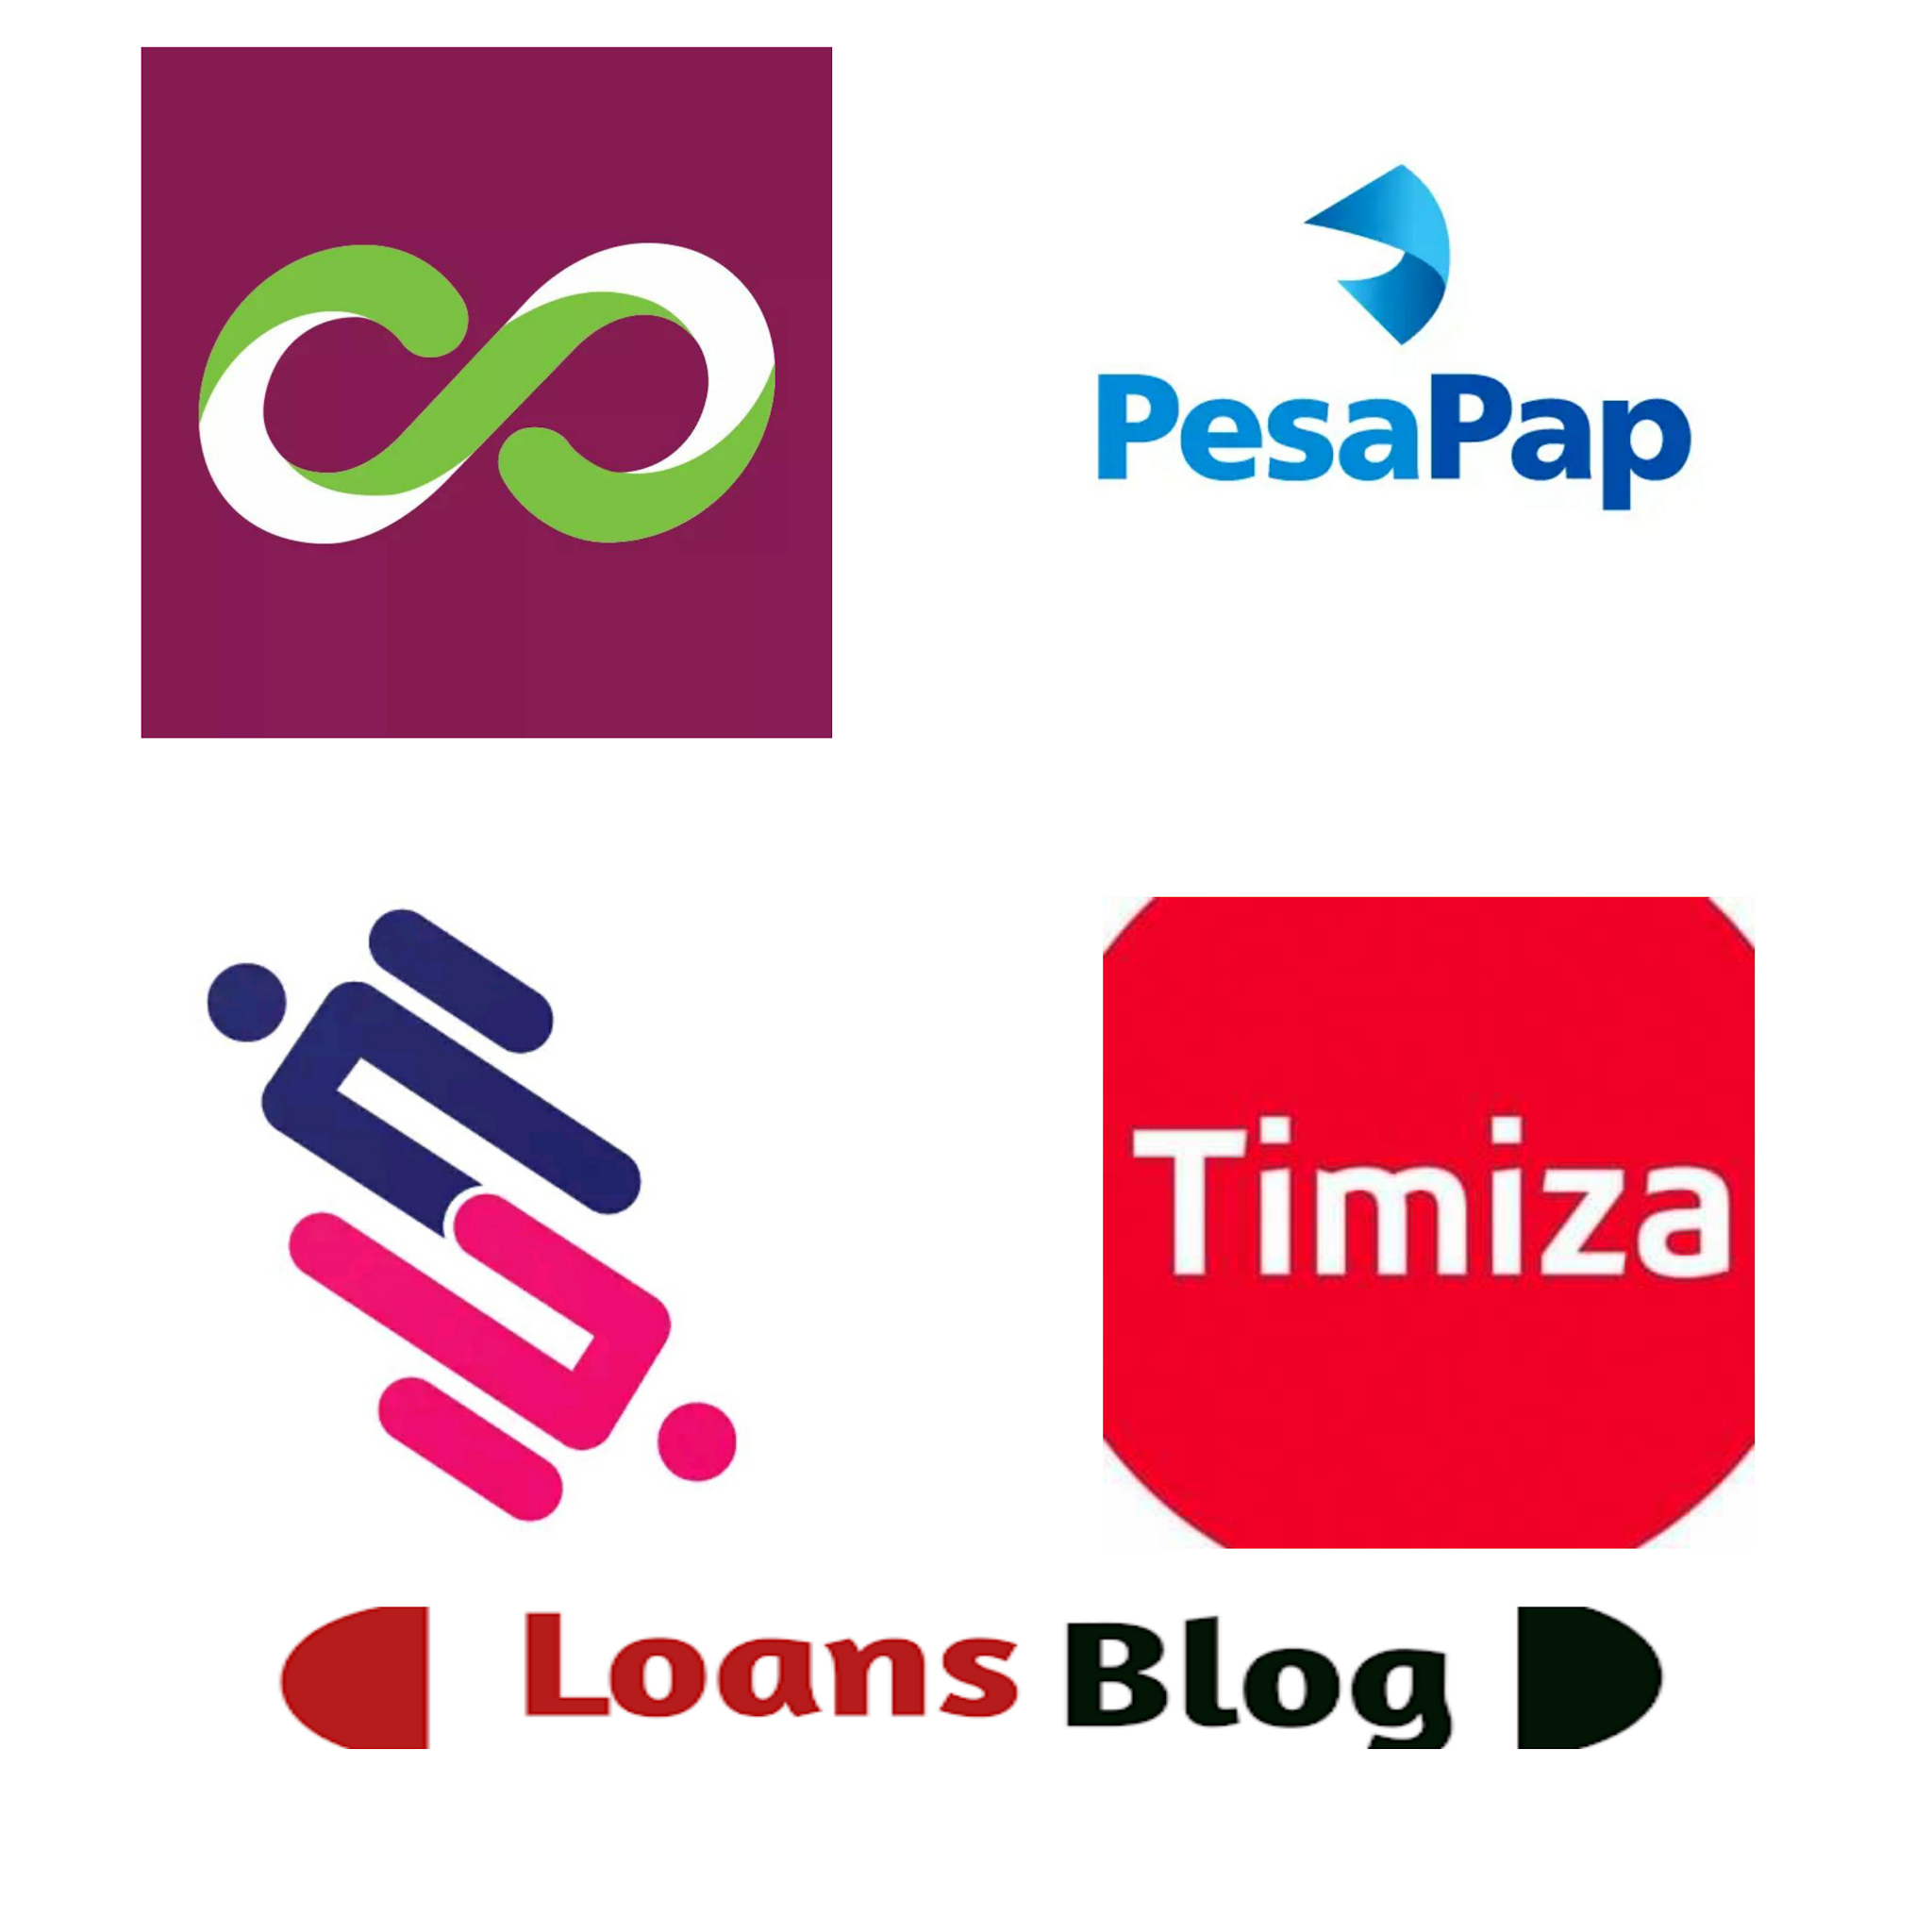 Loan apps in Kenya